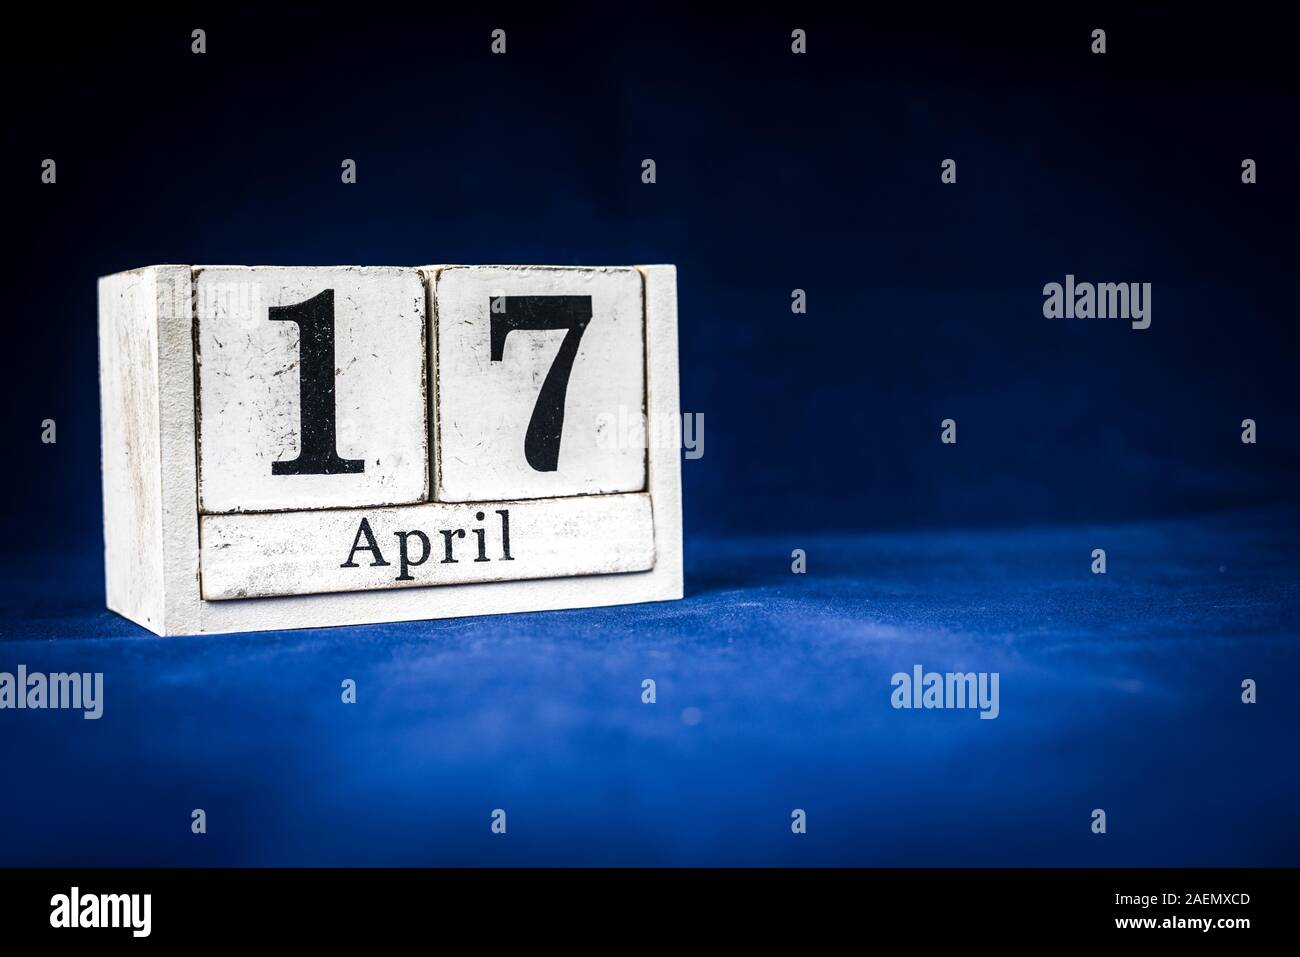 17 avril, 17e jour d'avril, 17 mois d'avril - calendrier blanc rustique en bois blocs sur fond bleu foncé avec l'espace vide pour le texte Banque D'Images